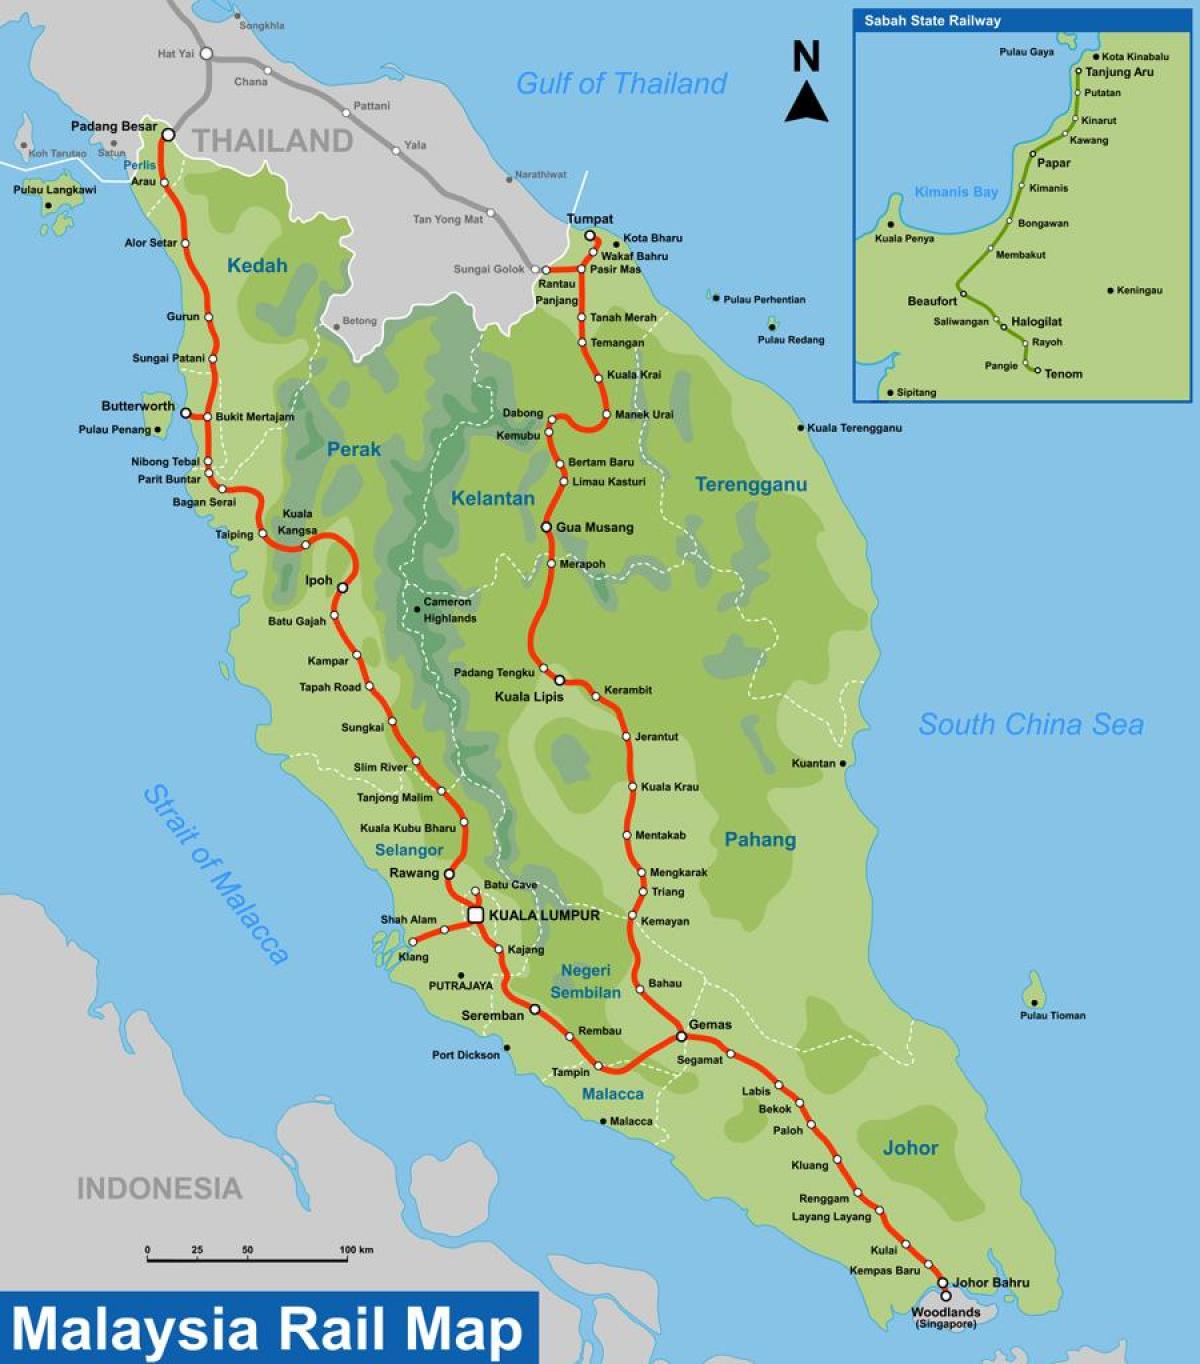 ktm маршрутата на мапата малезија